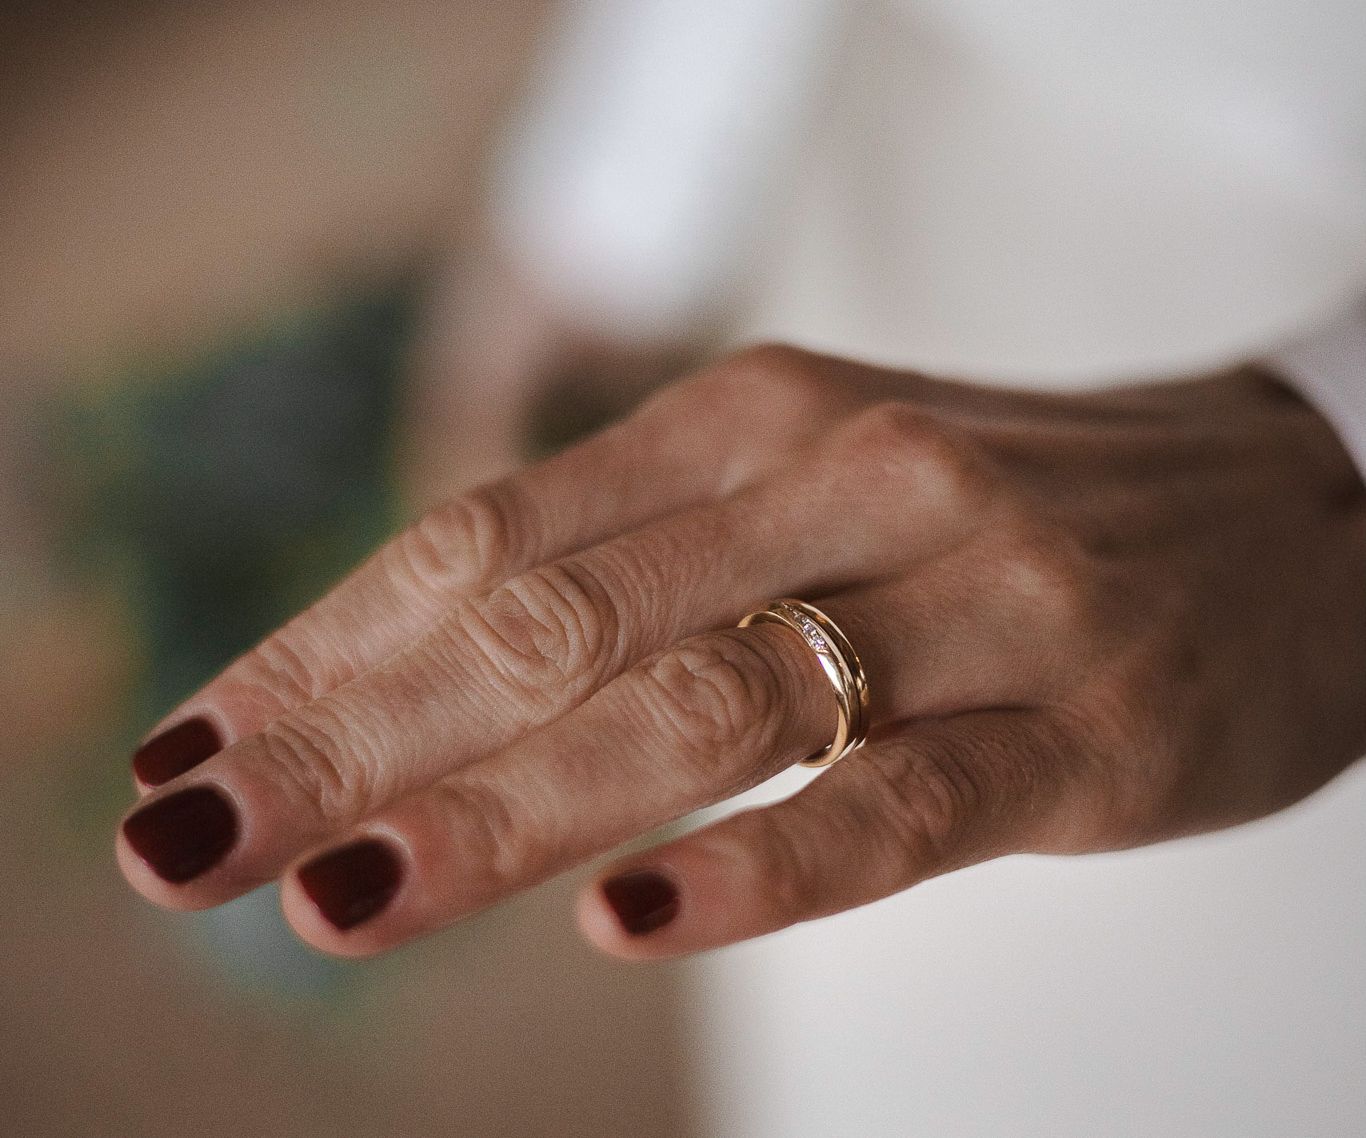 Brud med ring på fingret - bröllopsfotografering